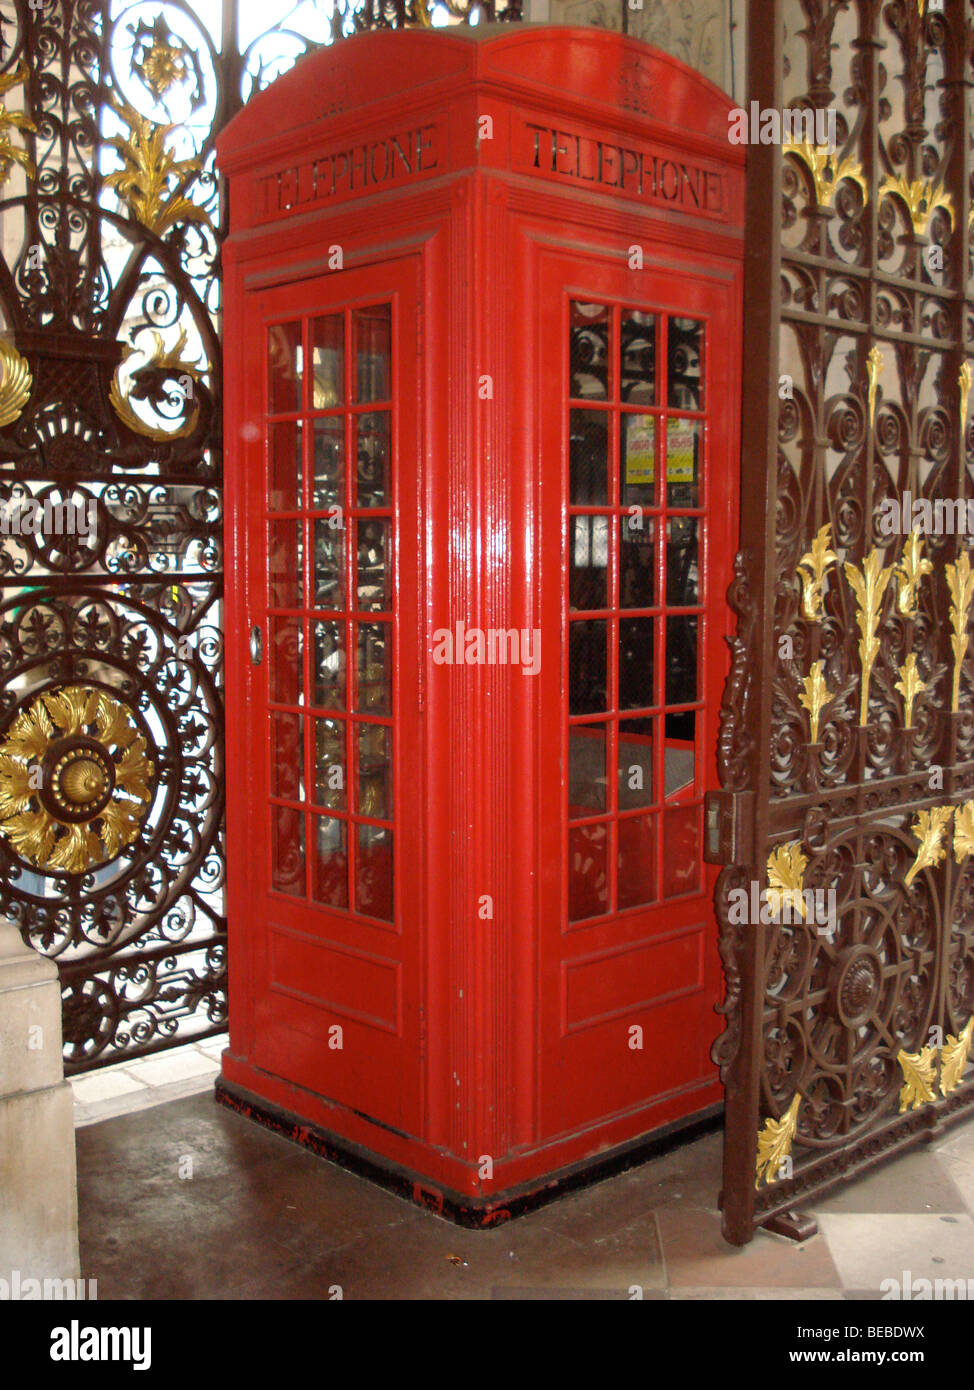 Der ursprüngliche Prototyp aus Holz für die jetzt legendäre K2 rote Telefonzelle, entworfen von Giles Gilbert Scott, Burlington House, London Stockfoto